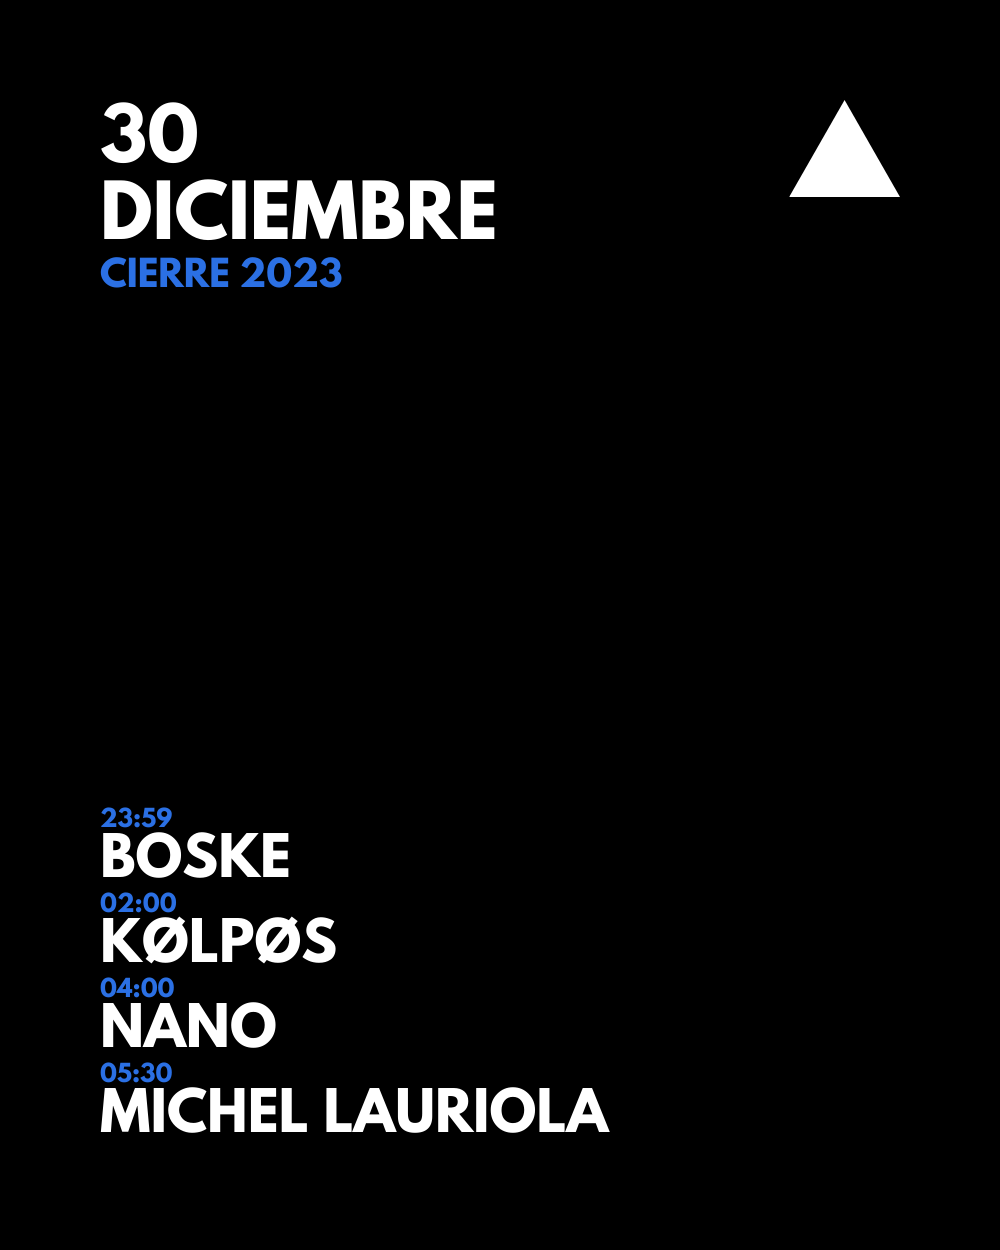 DICIEMBRE Under Club - Cierre 2023 - Página frontal